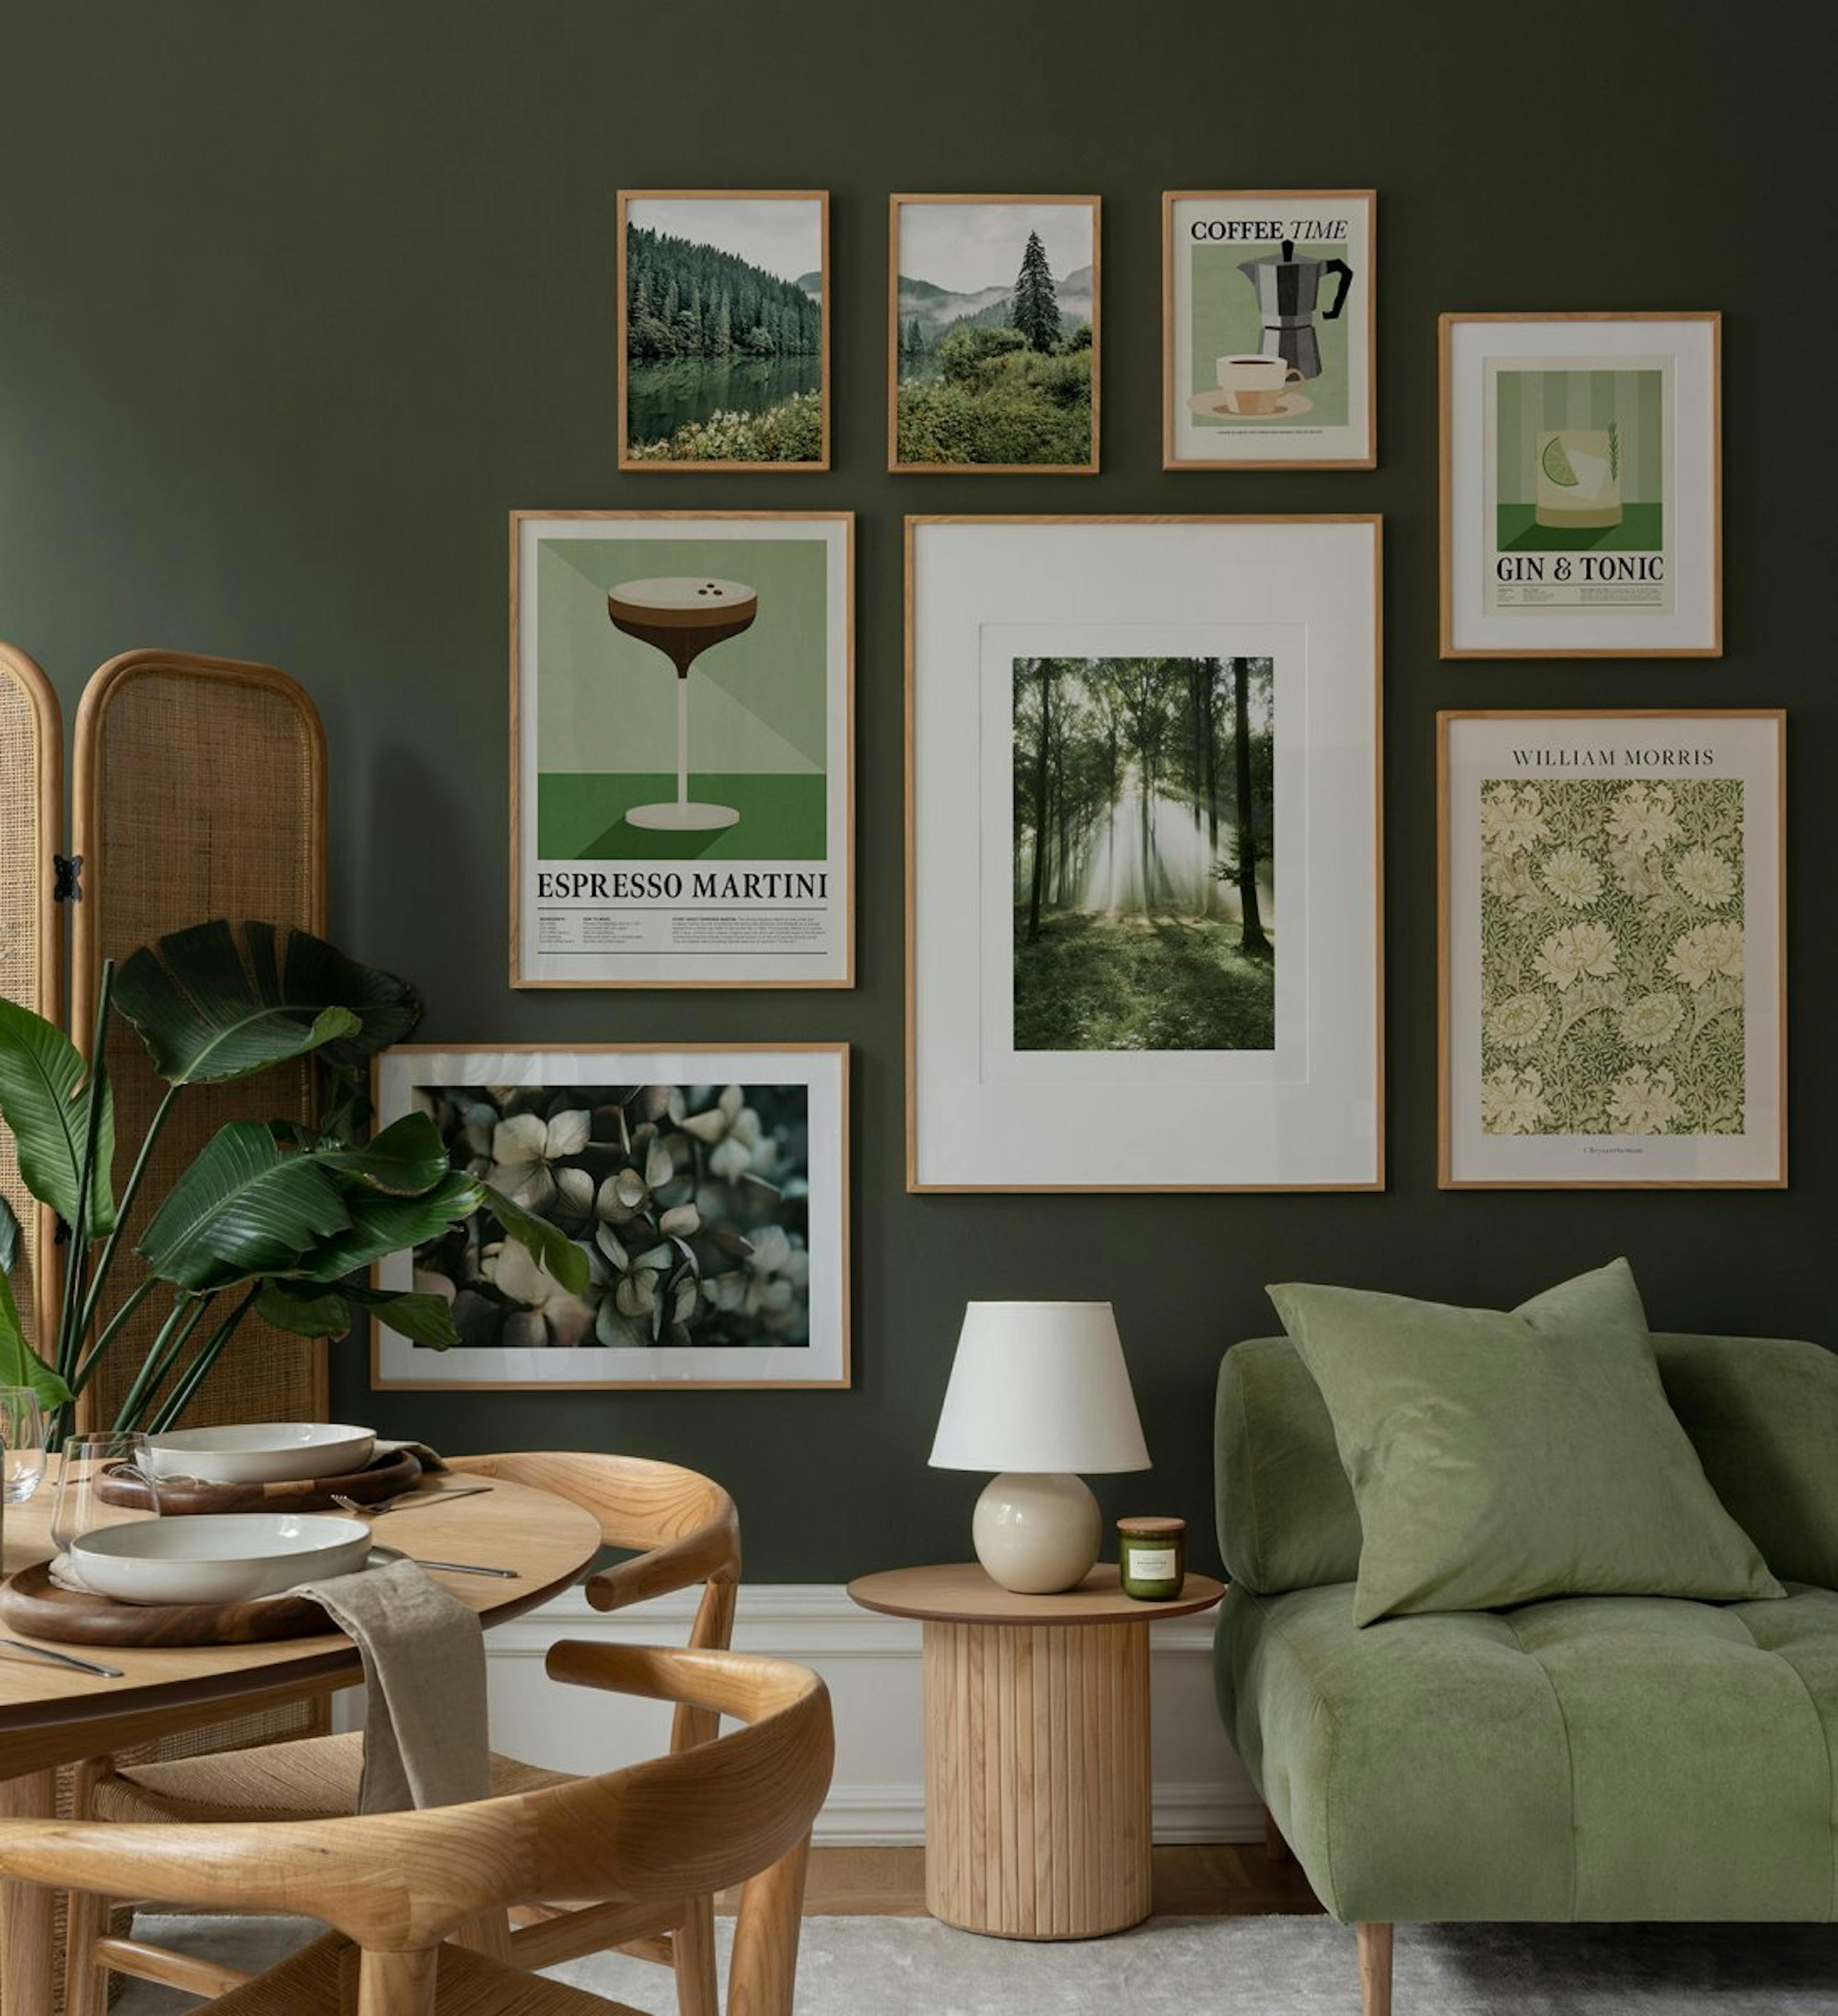 Vihreän ja beigen sävyinen keittiöseinä, jossa on moderni yhdistelmä luontoa, kukkia ja retroprinttejä tammikehyksellä olohuonee